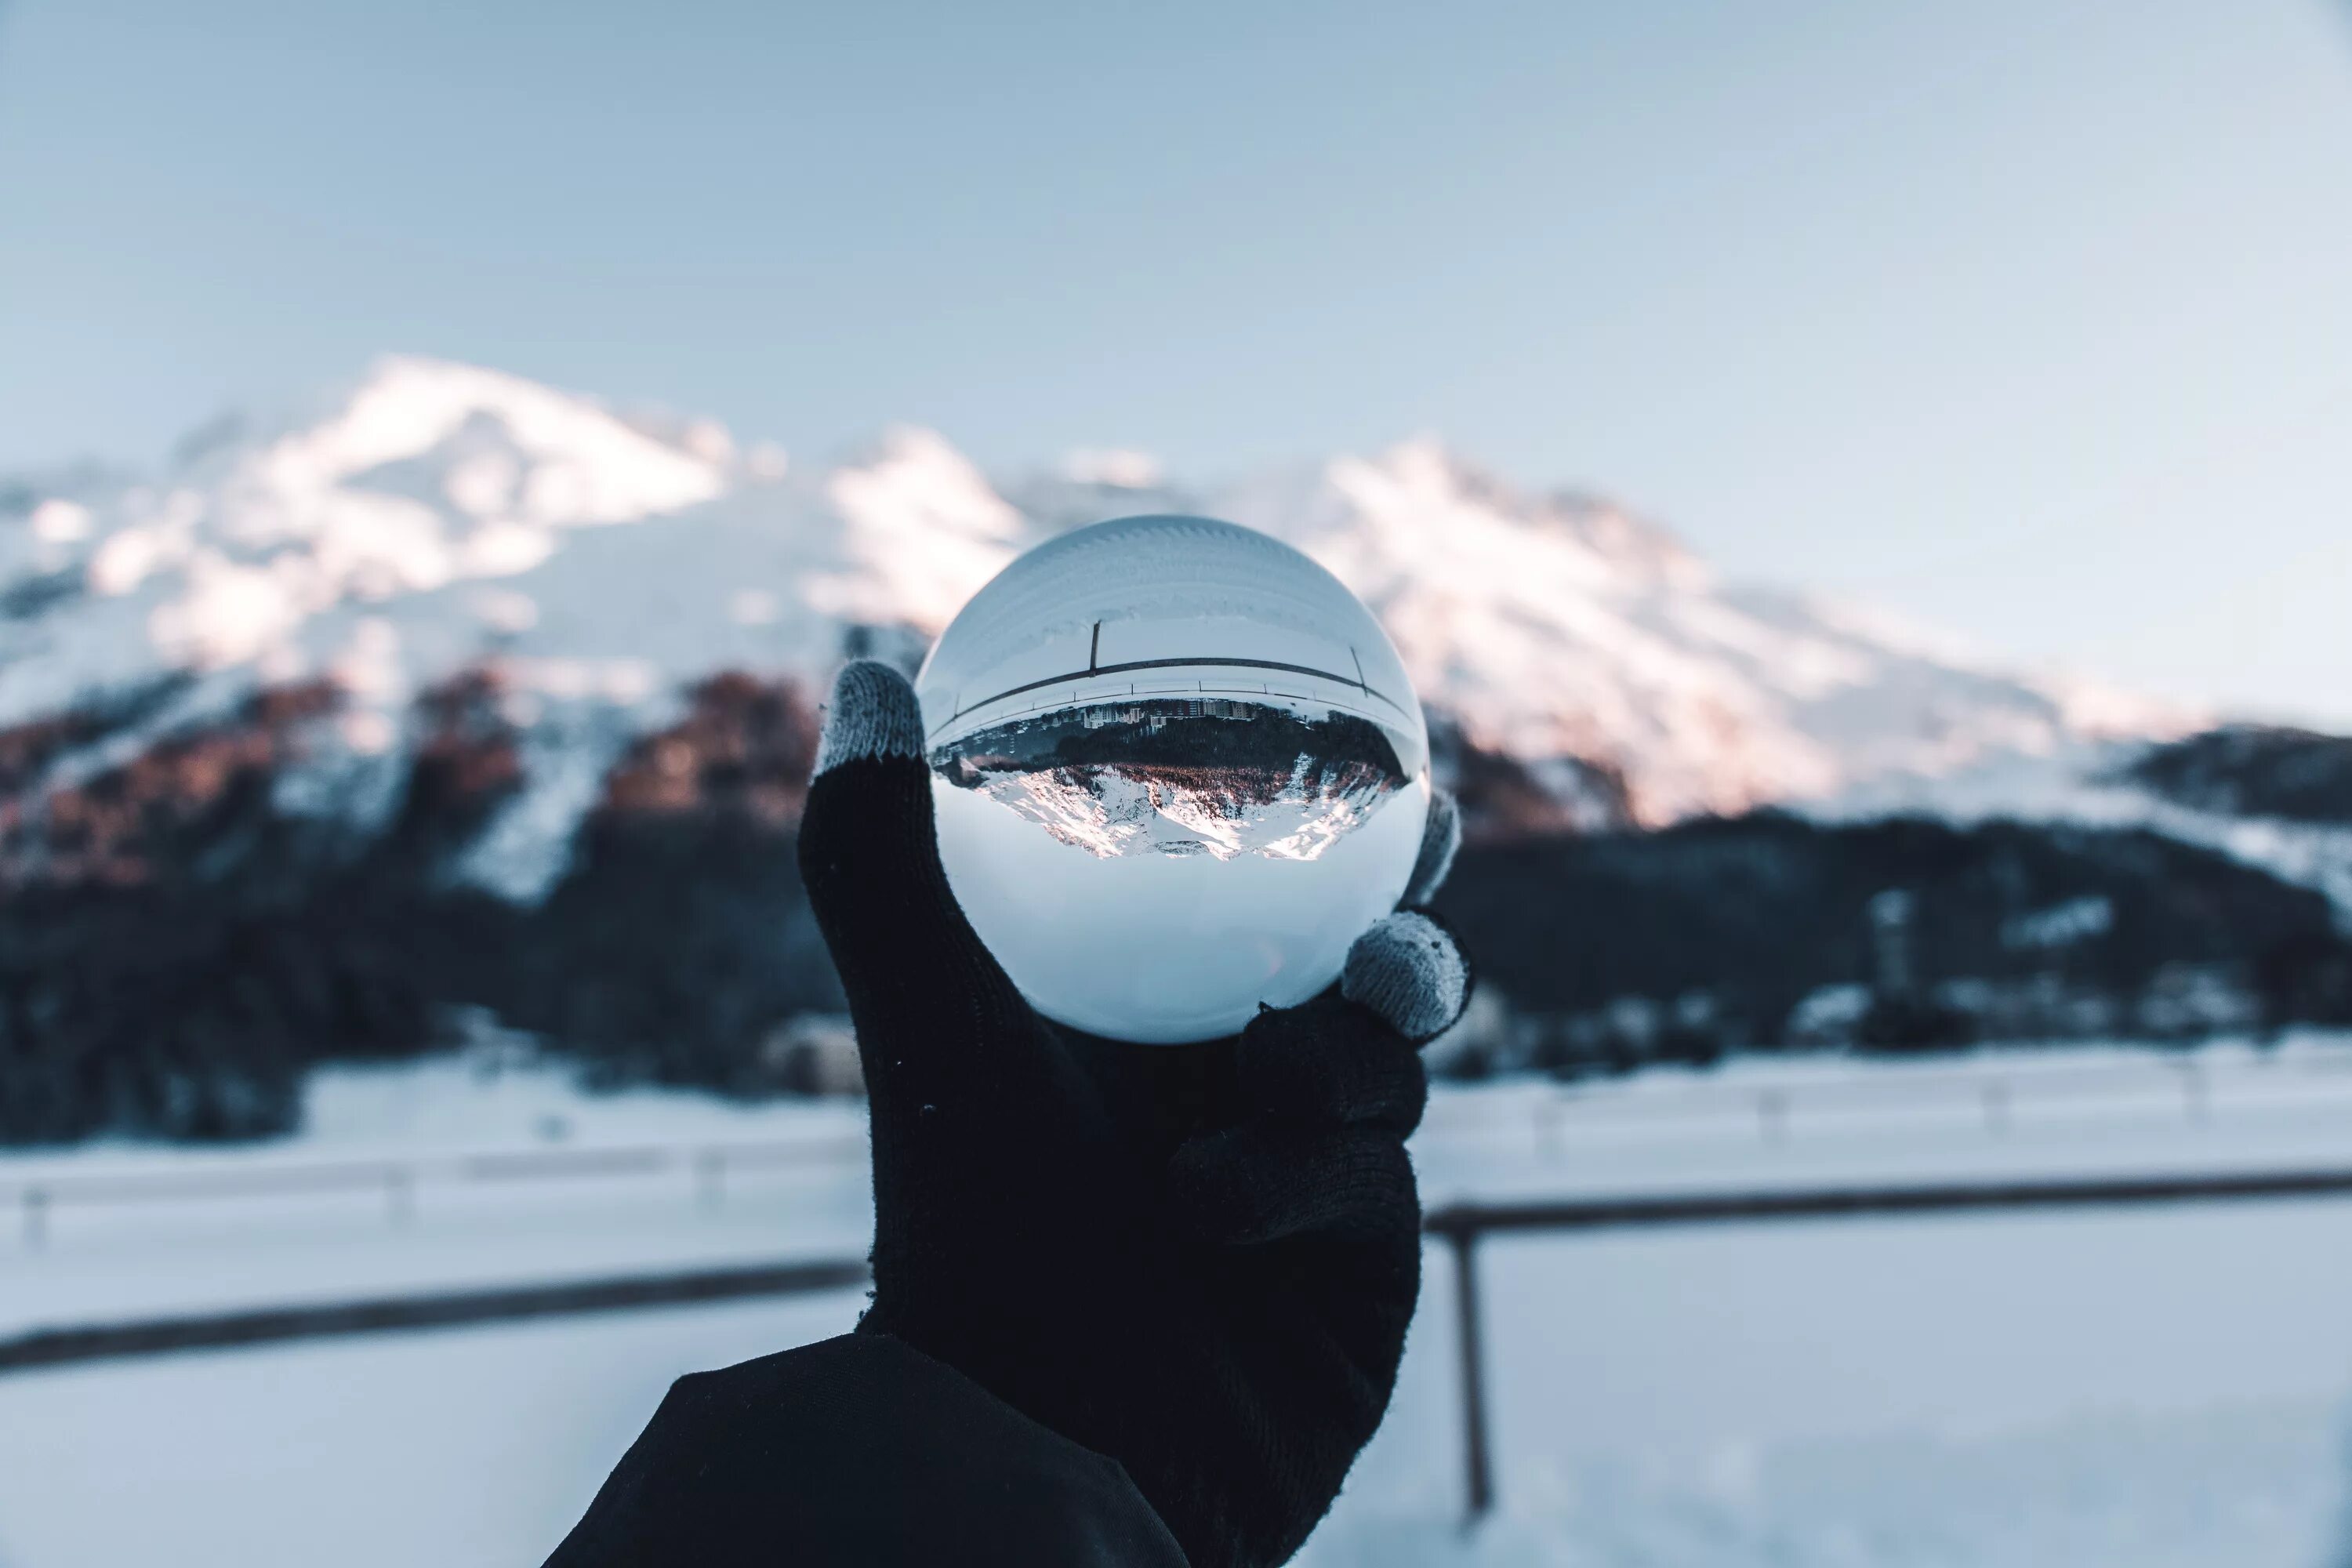 В шаре с горы. Отражение в шаре. Стеклянный шар в горах зимой. Стеклянный шар в руках зима. Стеклянный шар фон.